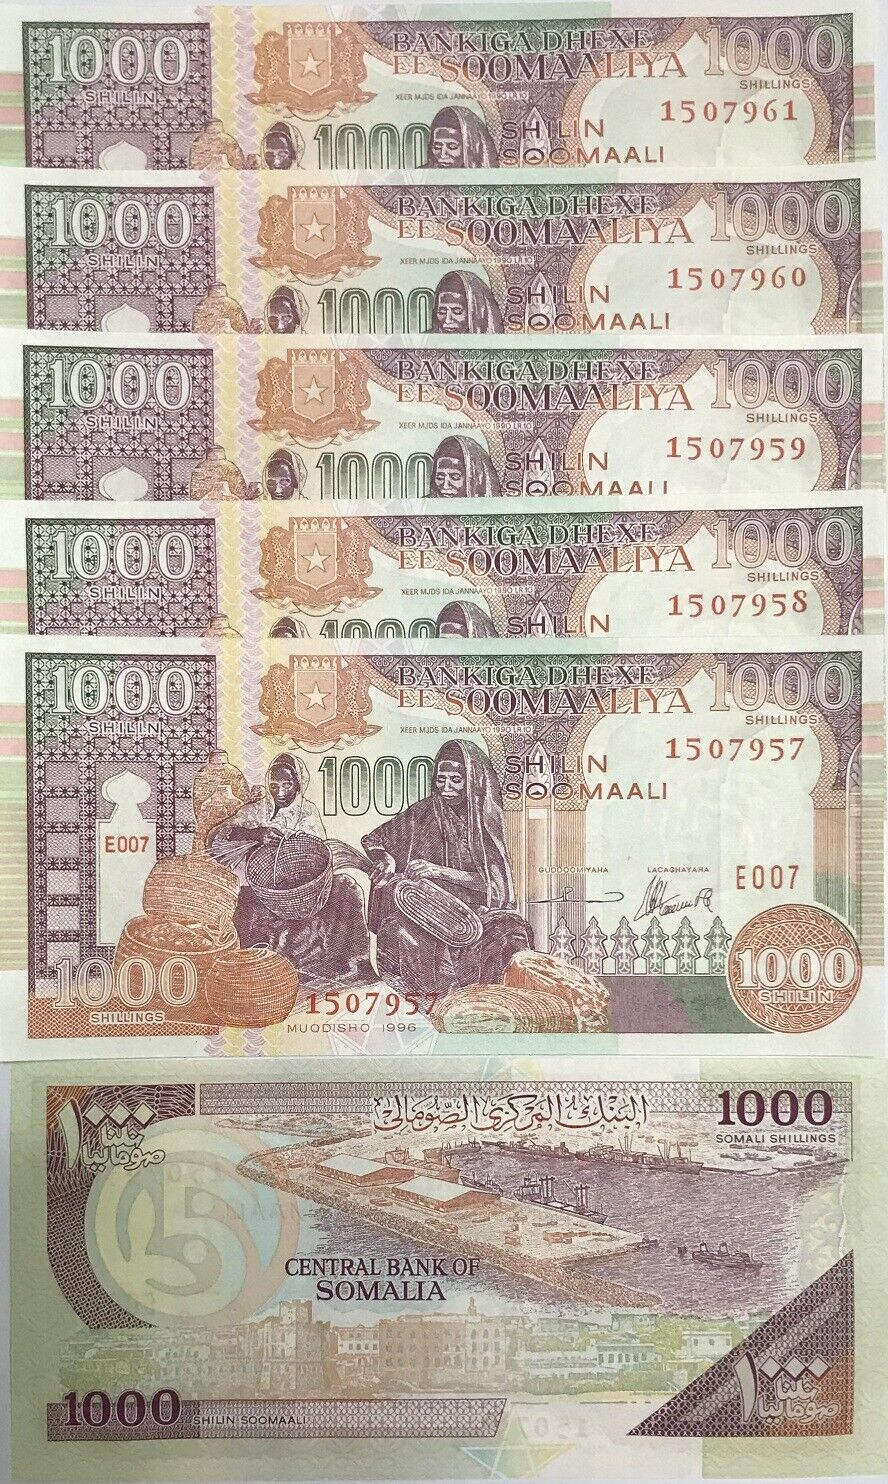 Somalia 1000 Shilling 1996 P 37 UNC LOT 5 PCS